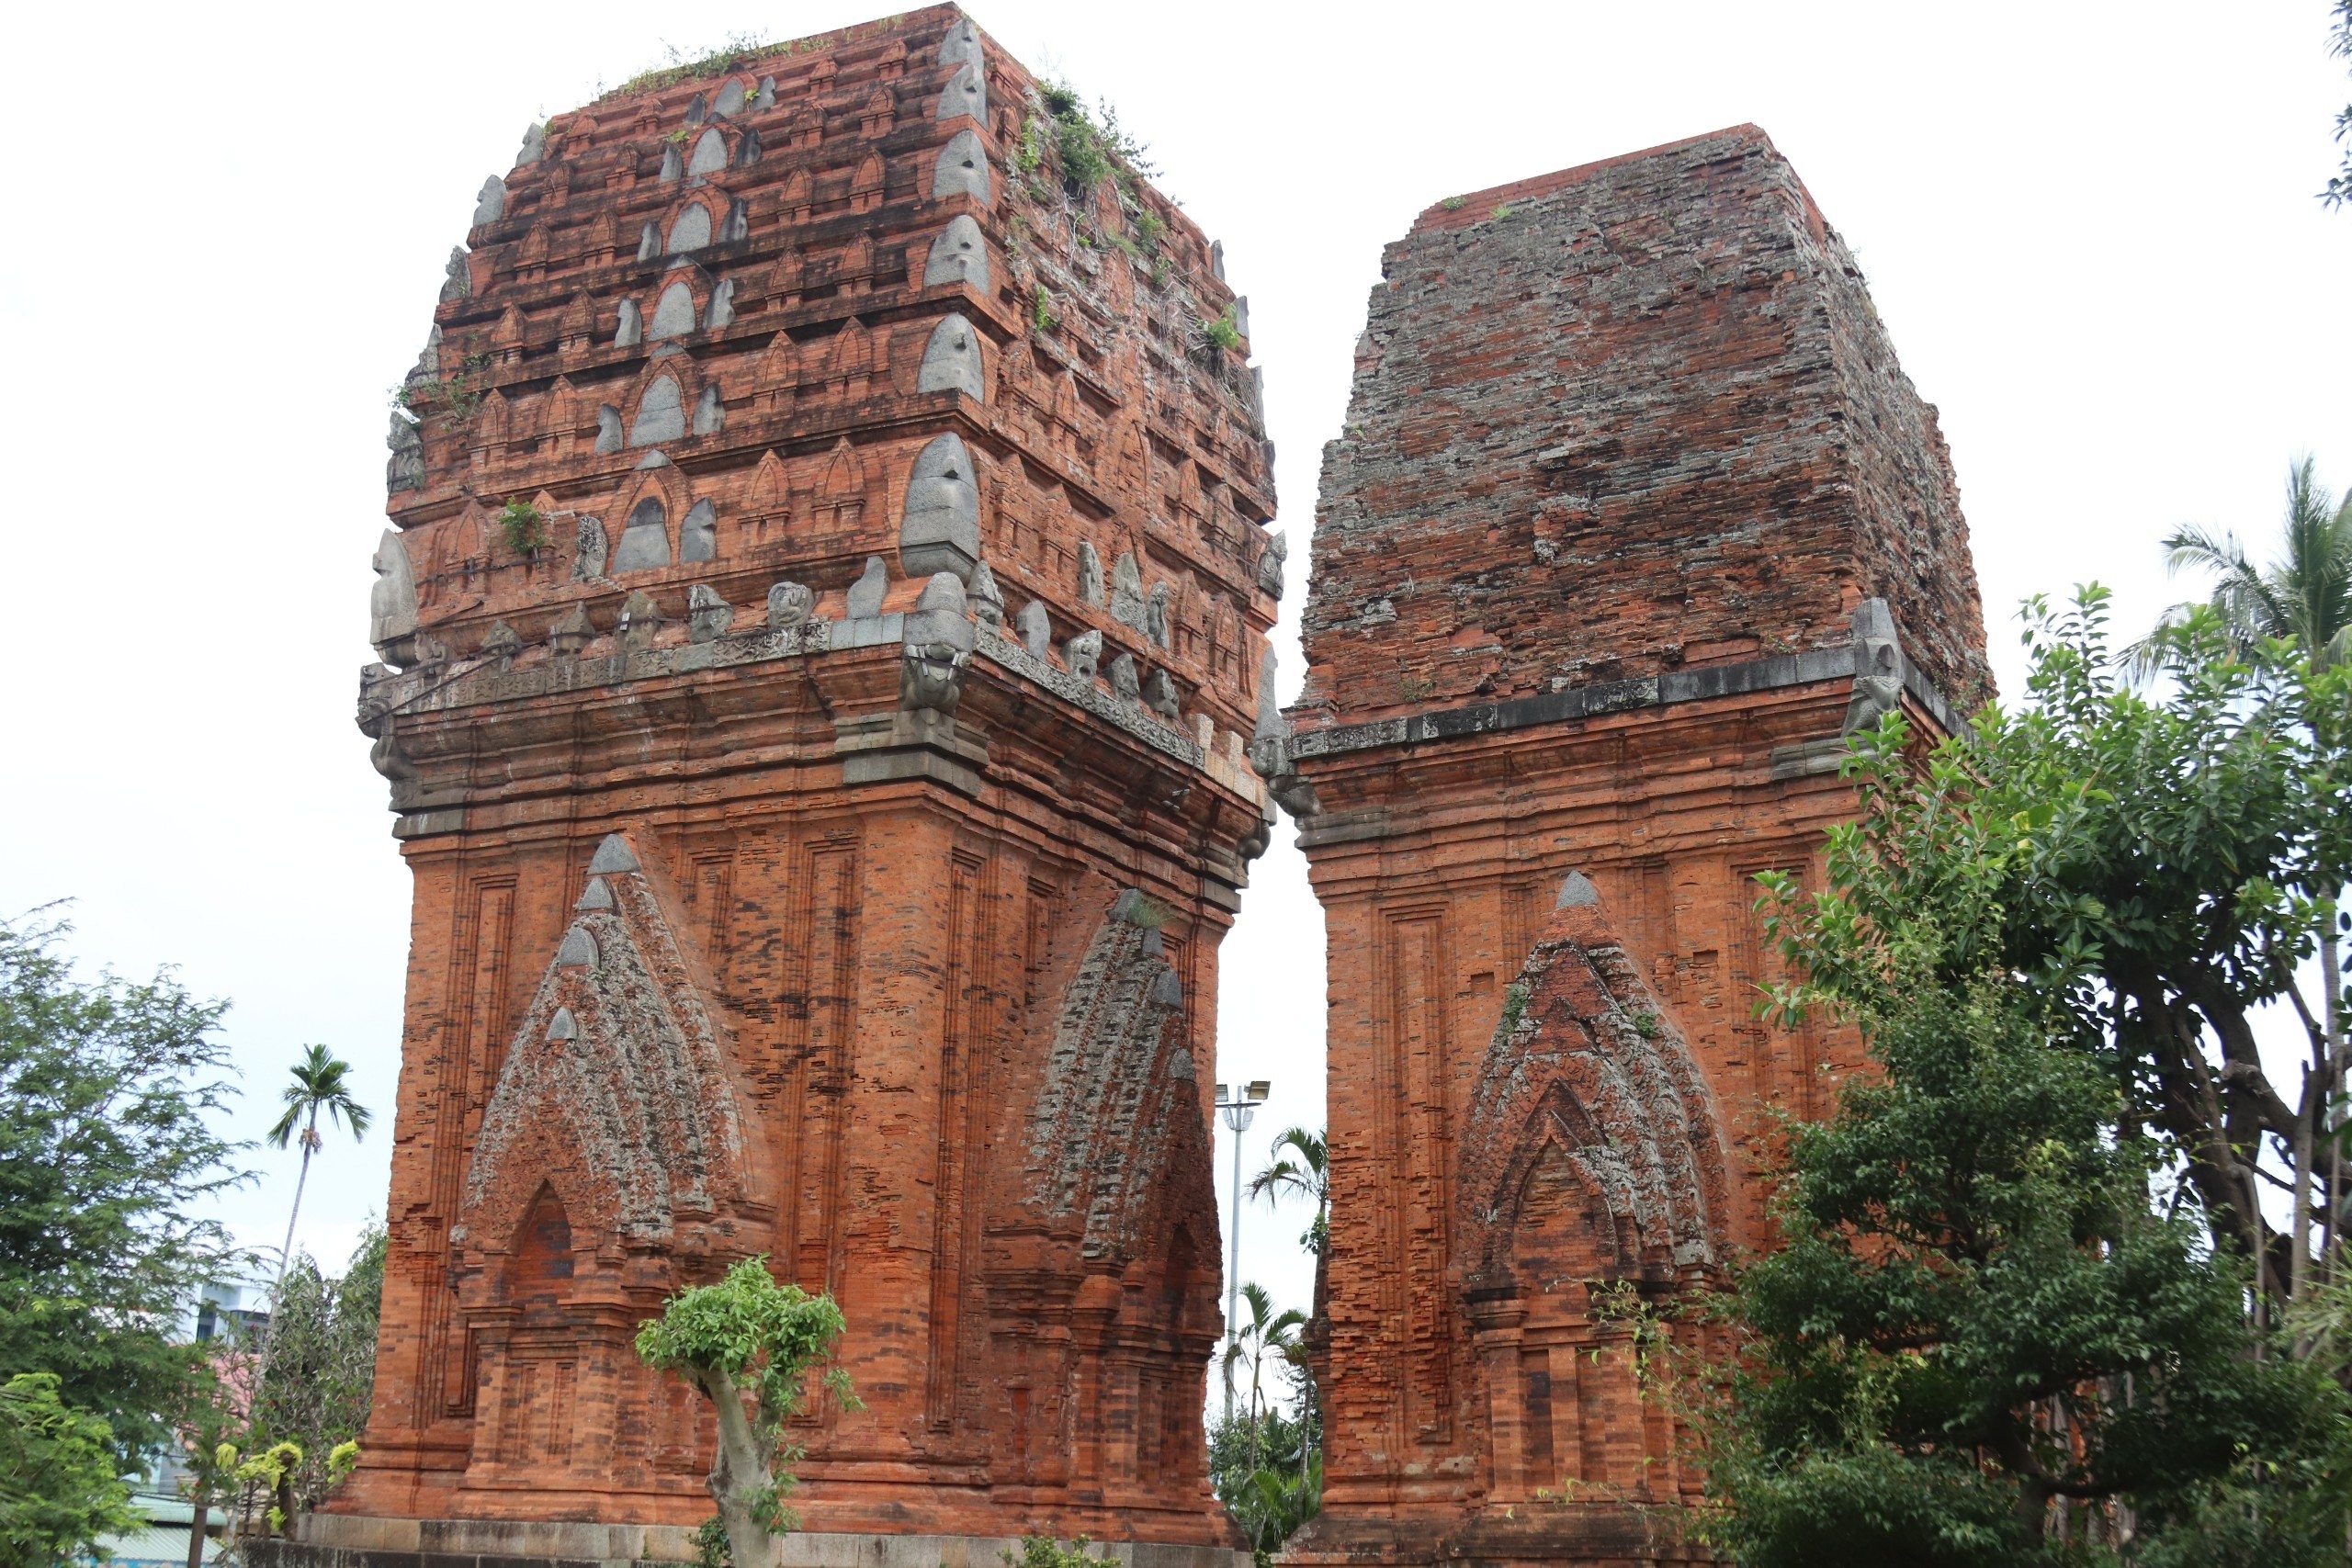 Phong cách kiến trúc độc đáo của tòa tháp có lịch sử hàng trăm năm ở Bình Định